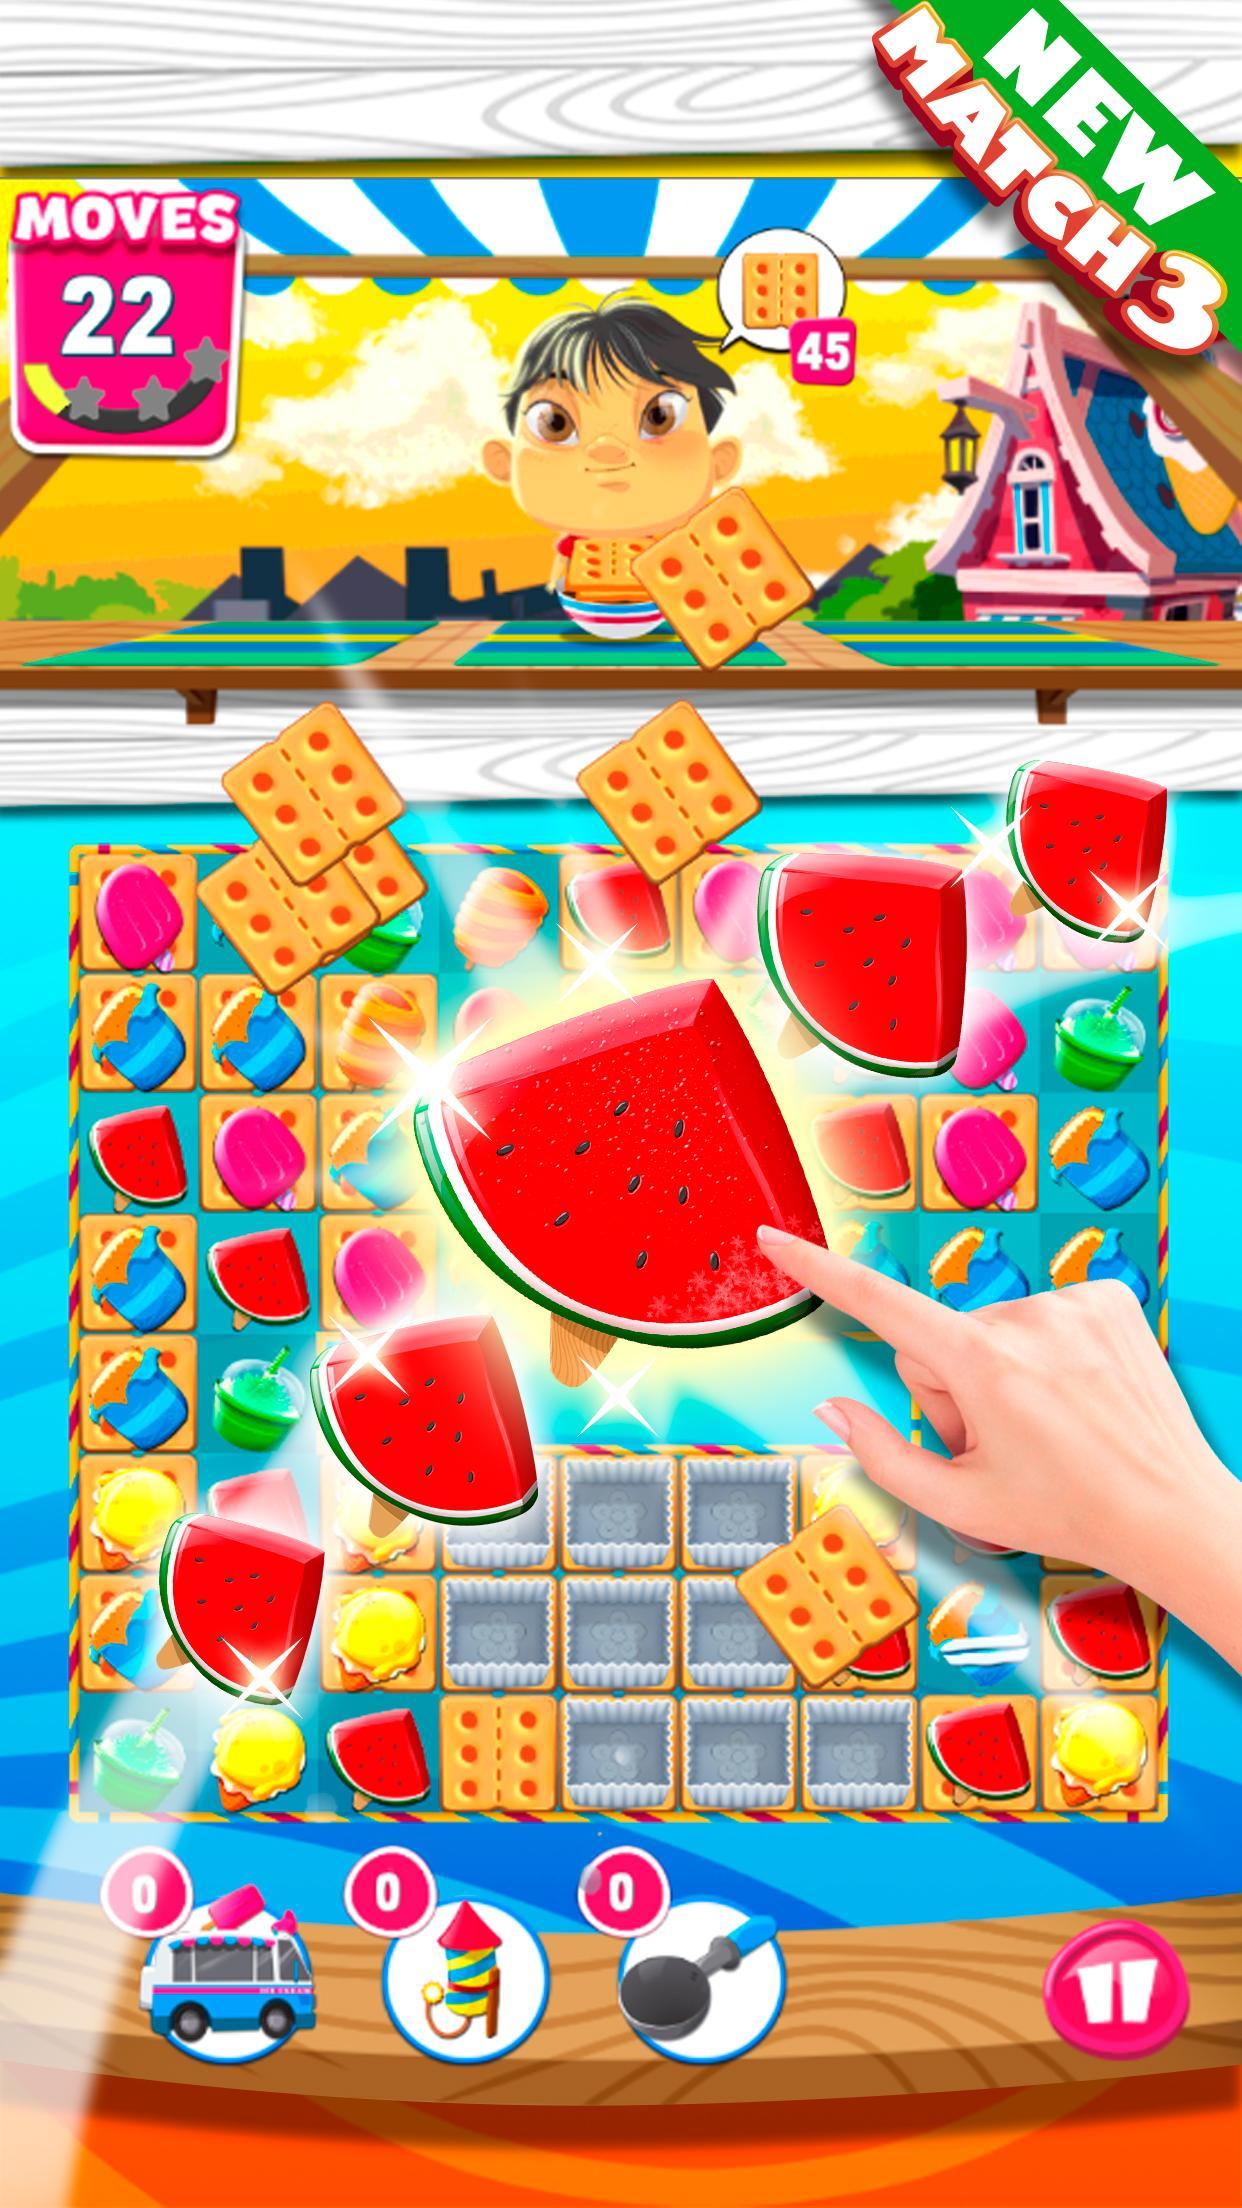 Screenshot 1 of Jogo de quebra-cabeça de combinar 3 sorvetes 2.4